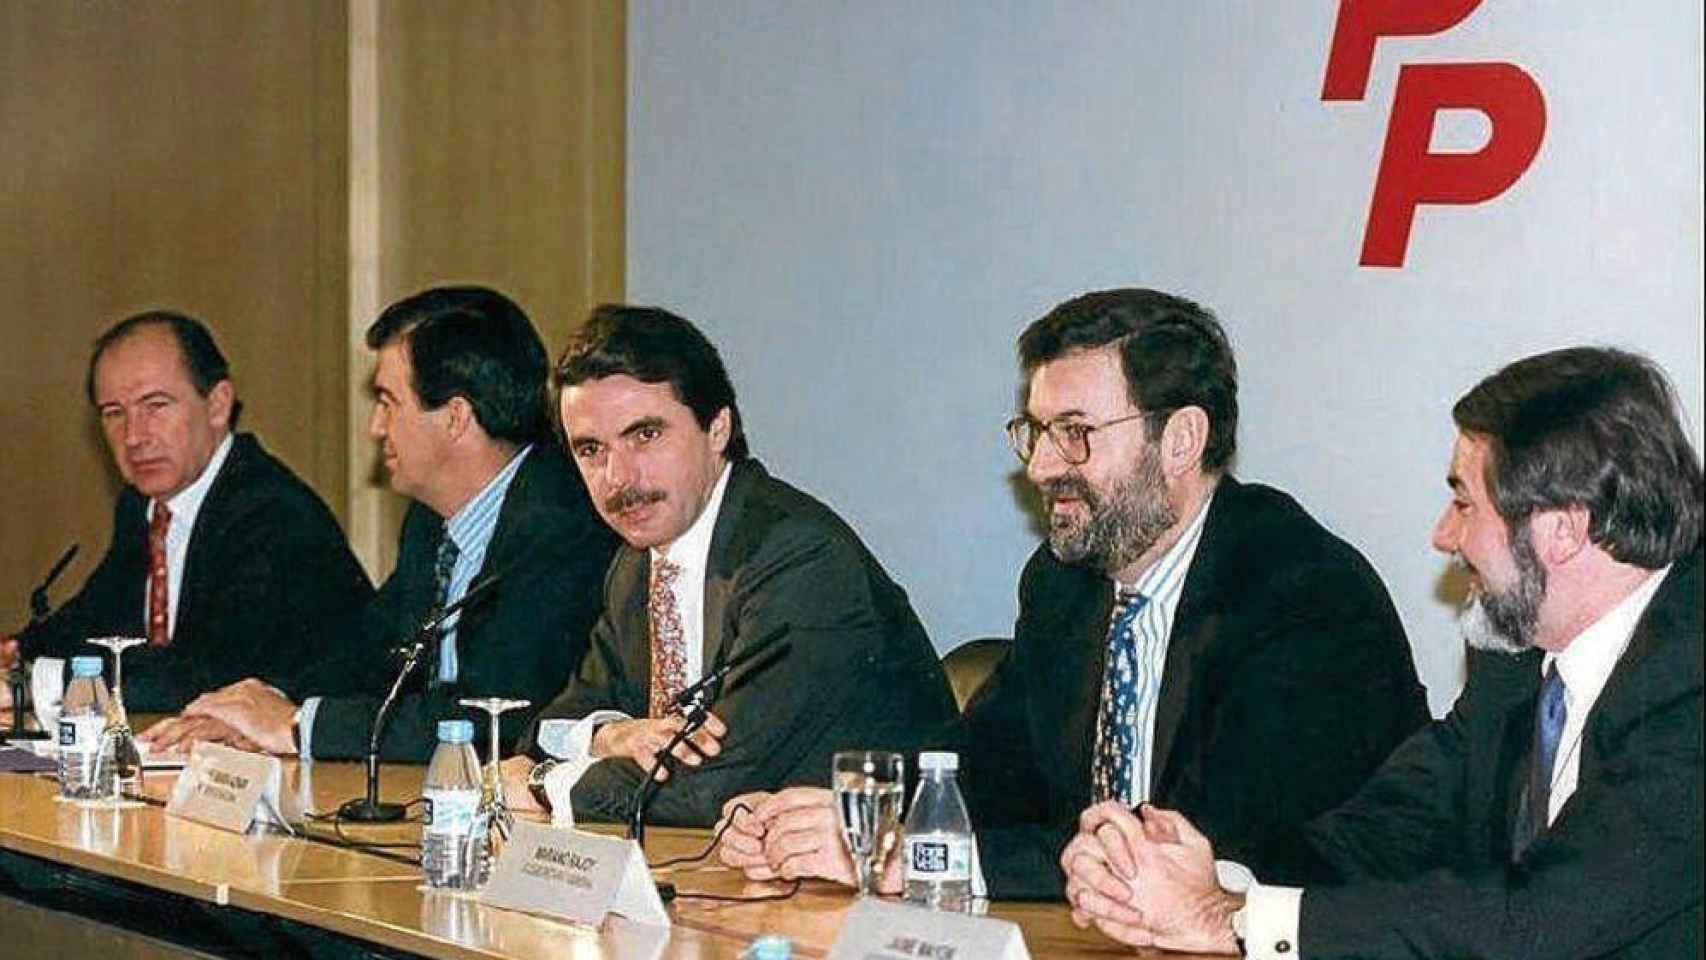 Rodrigo Rato, Francisco Álvarez-Cascos, José María Aznar, Mariano Rajoy y Jaime Mayor Oreja, en una imagen de 1996.